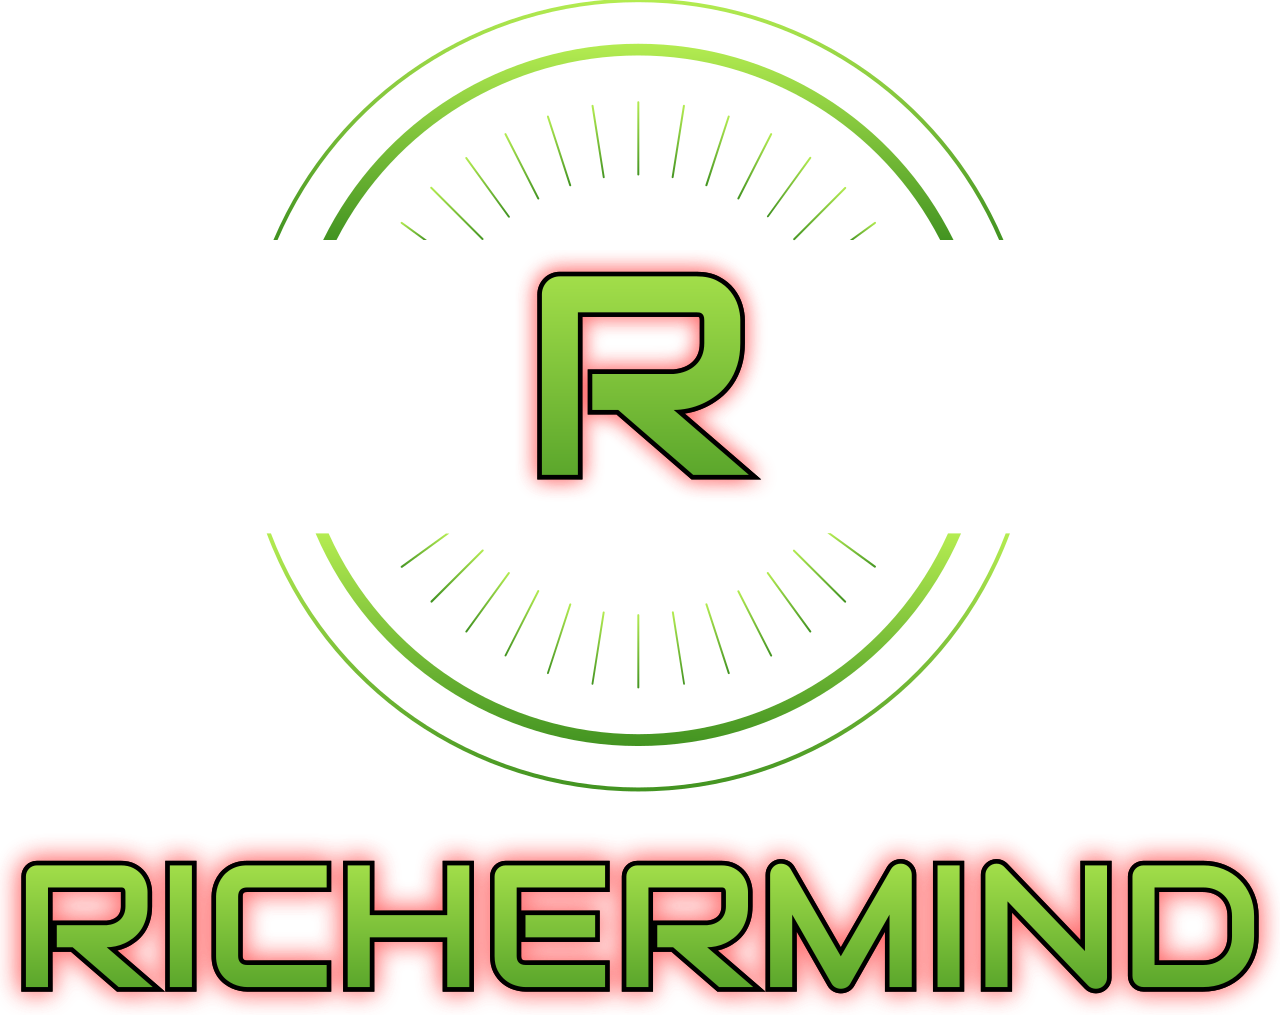 RICHERMIND's web page